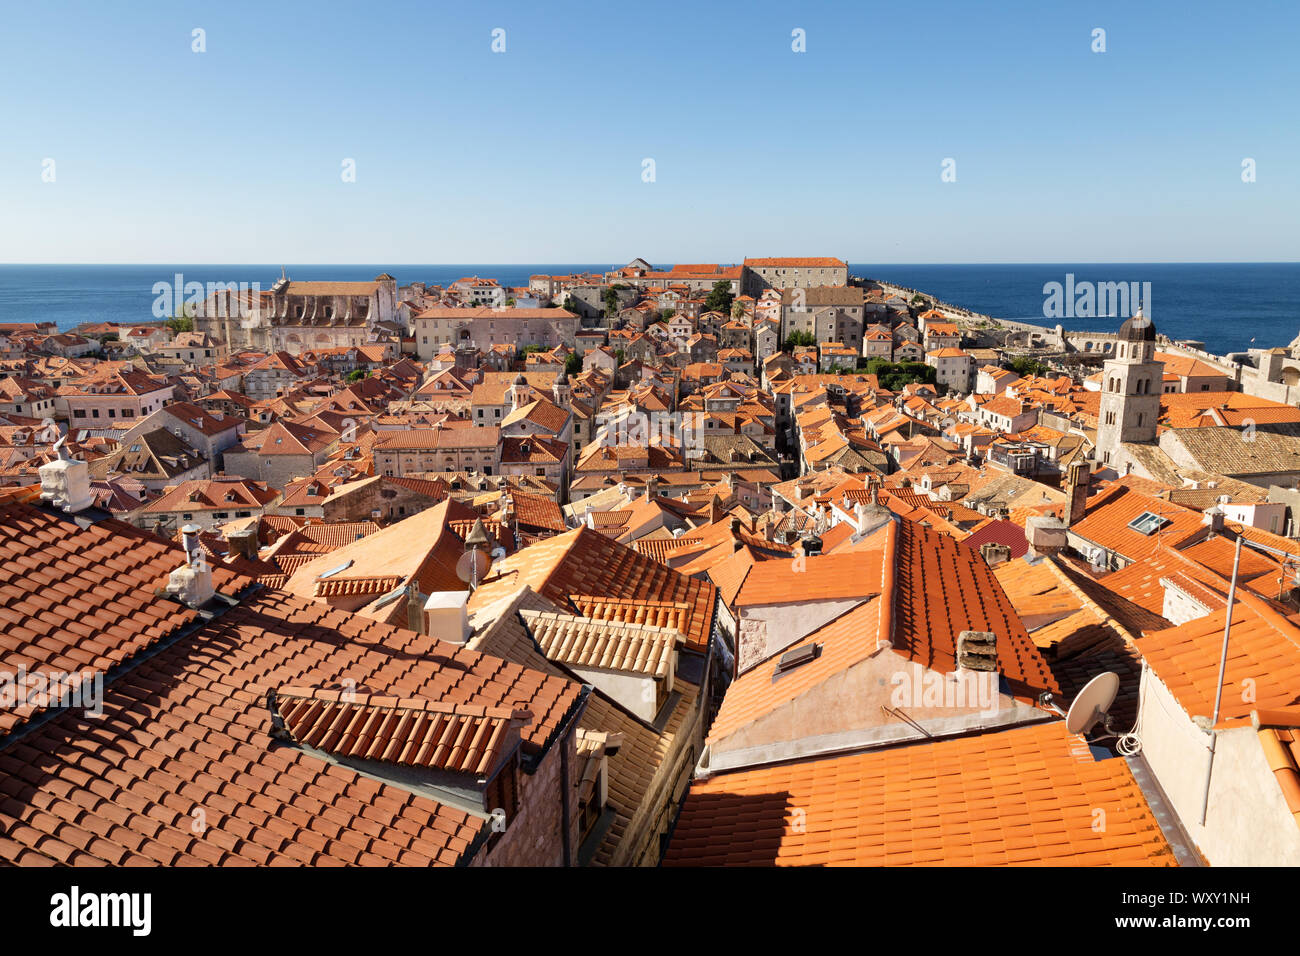 La vieille ville de Dubrovnik, toits de tuiles rouges et de bâtiments médiévaux vu des murs de la ville, site du patrimoine mondial de l'UNESCO, Dubrovnik, Croatie Europe Banque D'Images